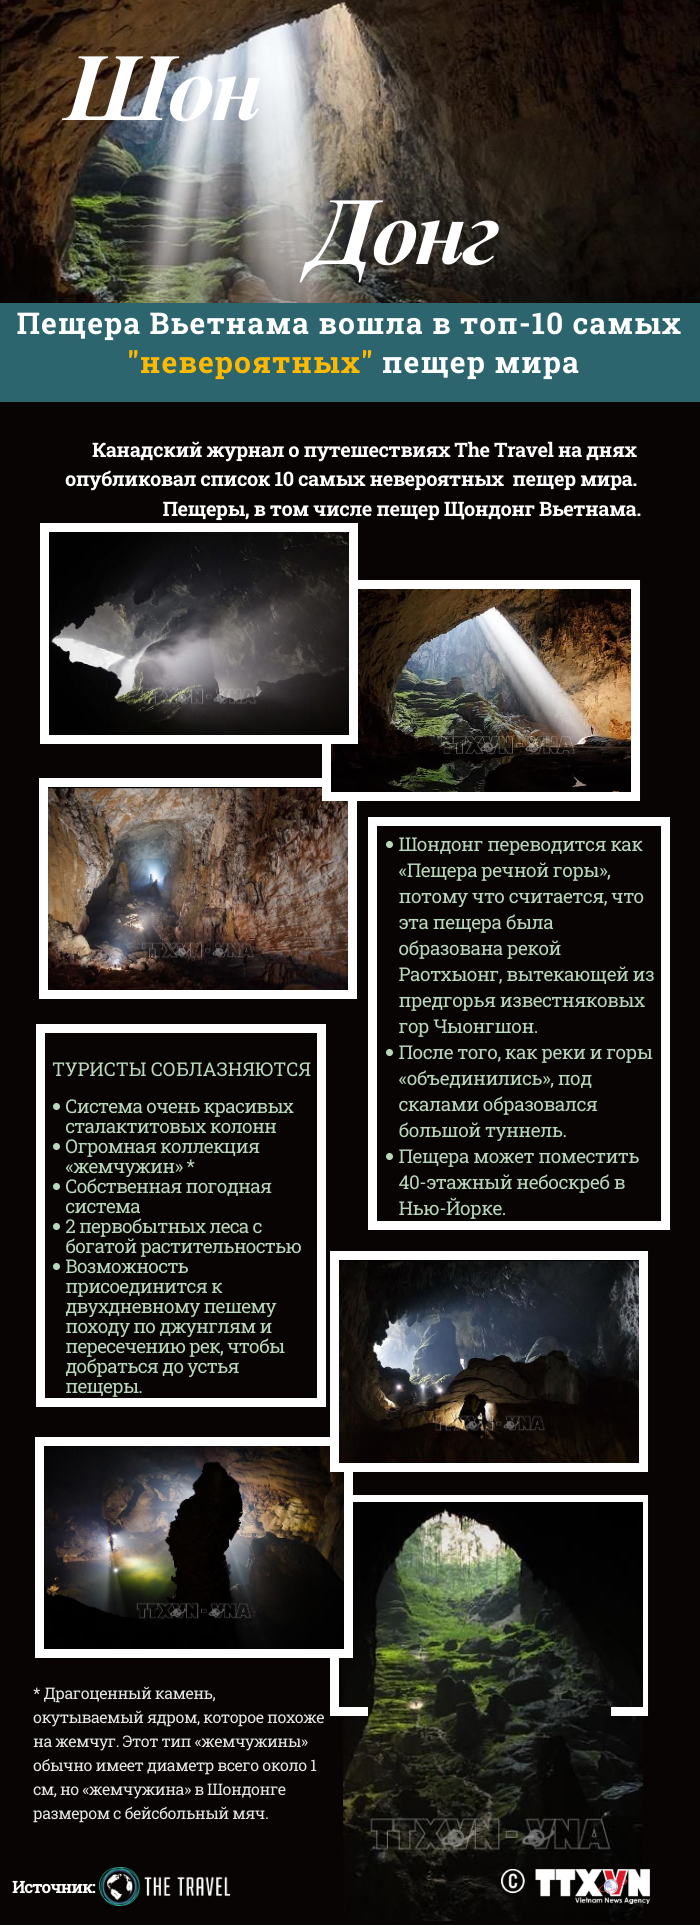 Пещера Шондонг вошла в топ-10 самых невероятных пещер мира hinh anh 1